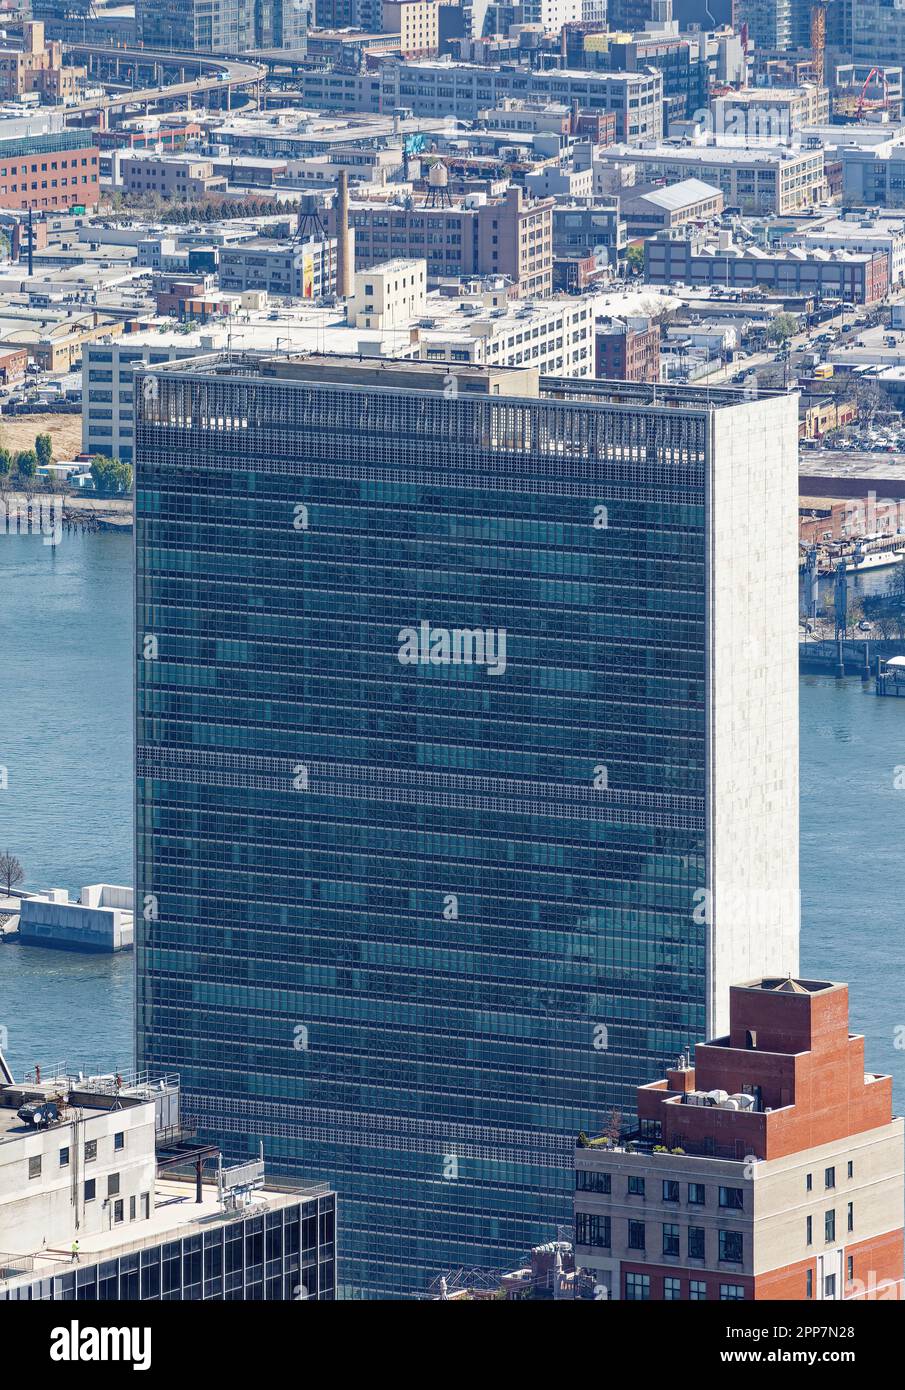 La torre simbolo del Segretariato delle Nazioni Unite, alla fine di East 42nd Street. Le doppie pareti di vetro verde a tenda sono tappate in marmo bianco. Foto Stock